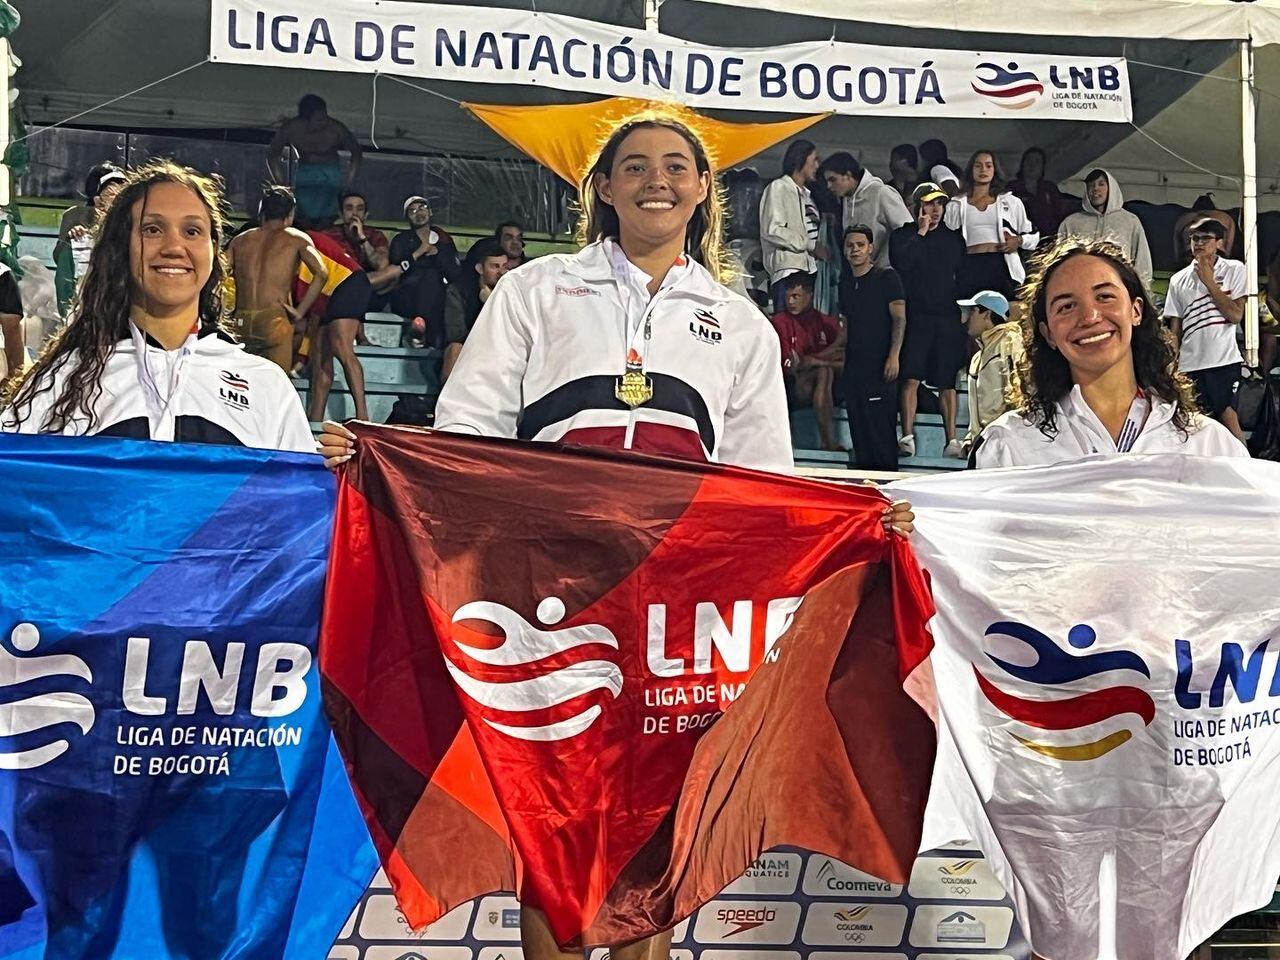 A sus 17 años, Jimena Leguizamón clasificó a la semifinal del Campeonato Mundial de Natación 2022,
en Budapest, siendo la primera colombiana en lograrlo.